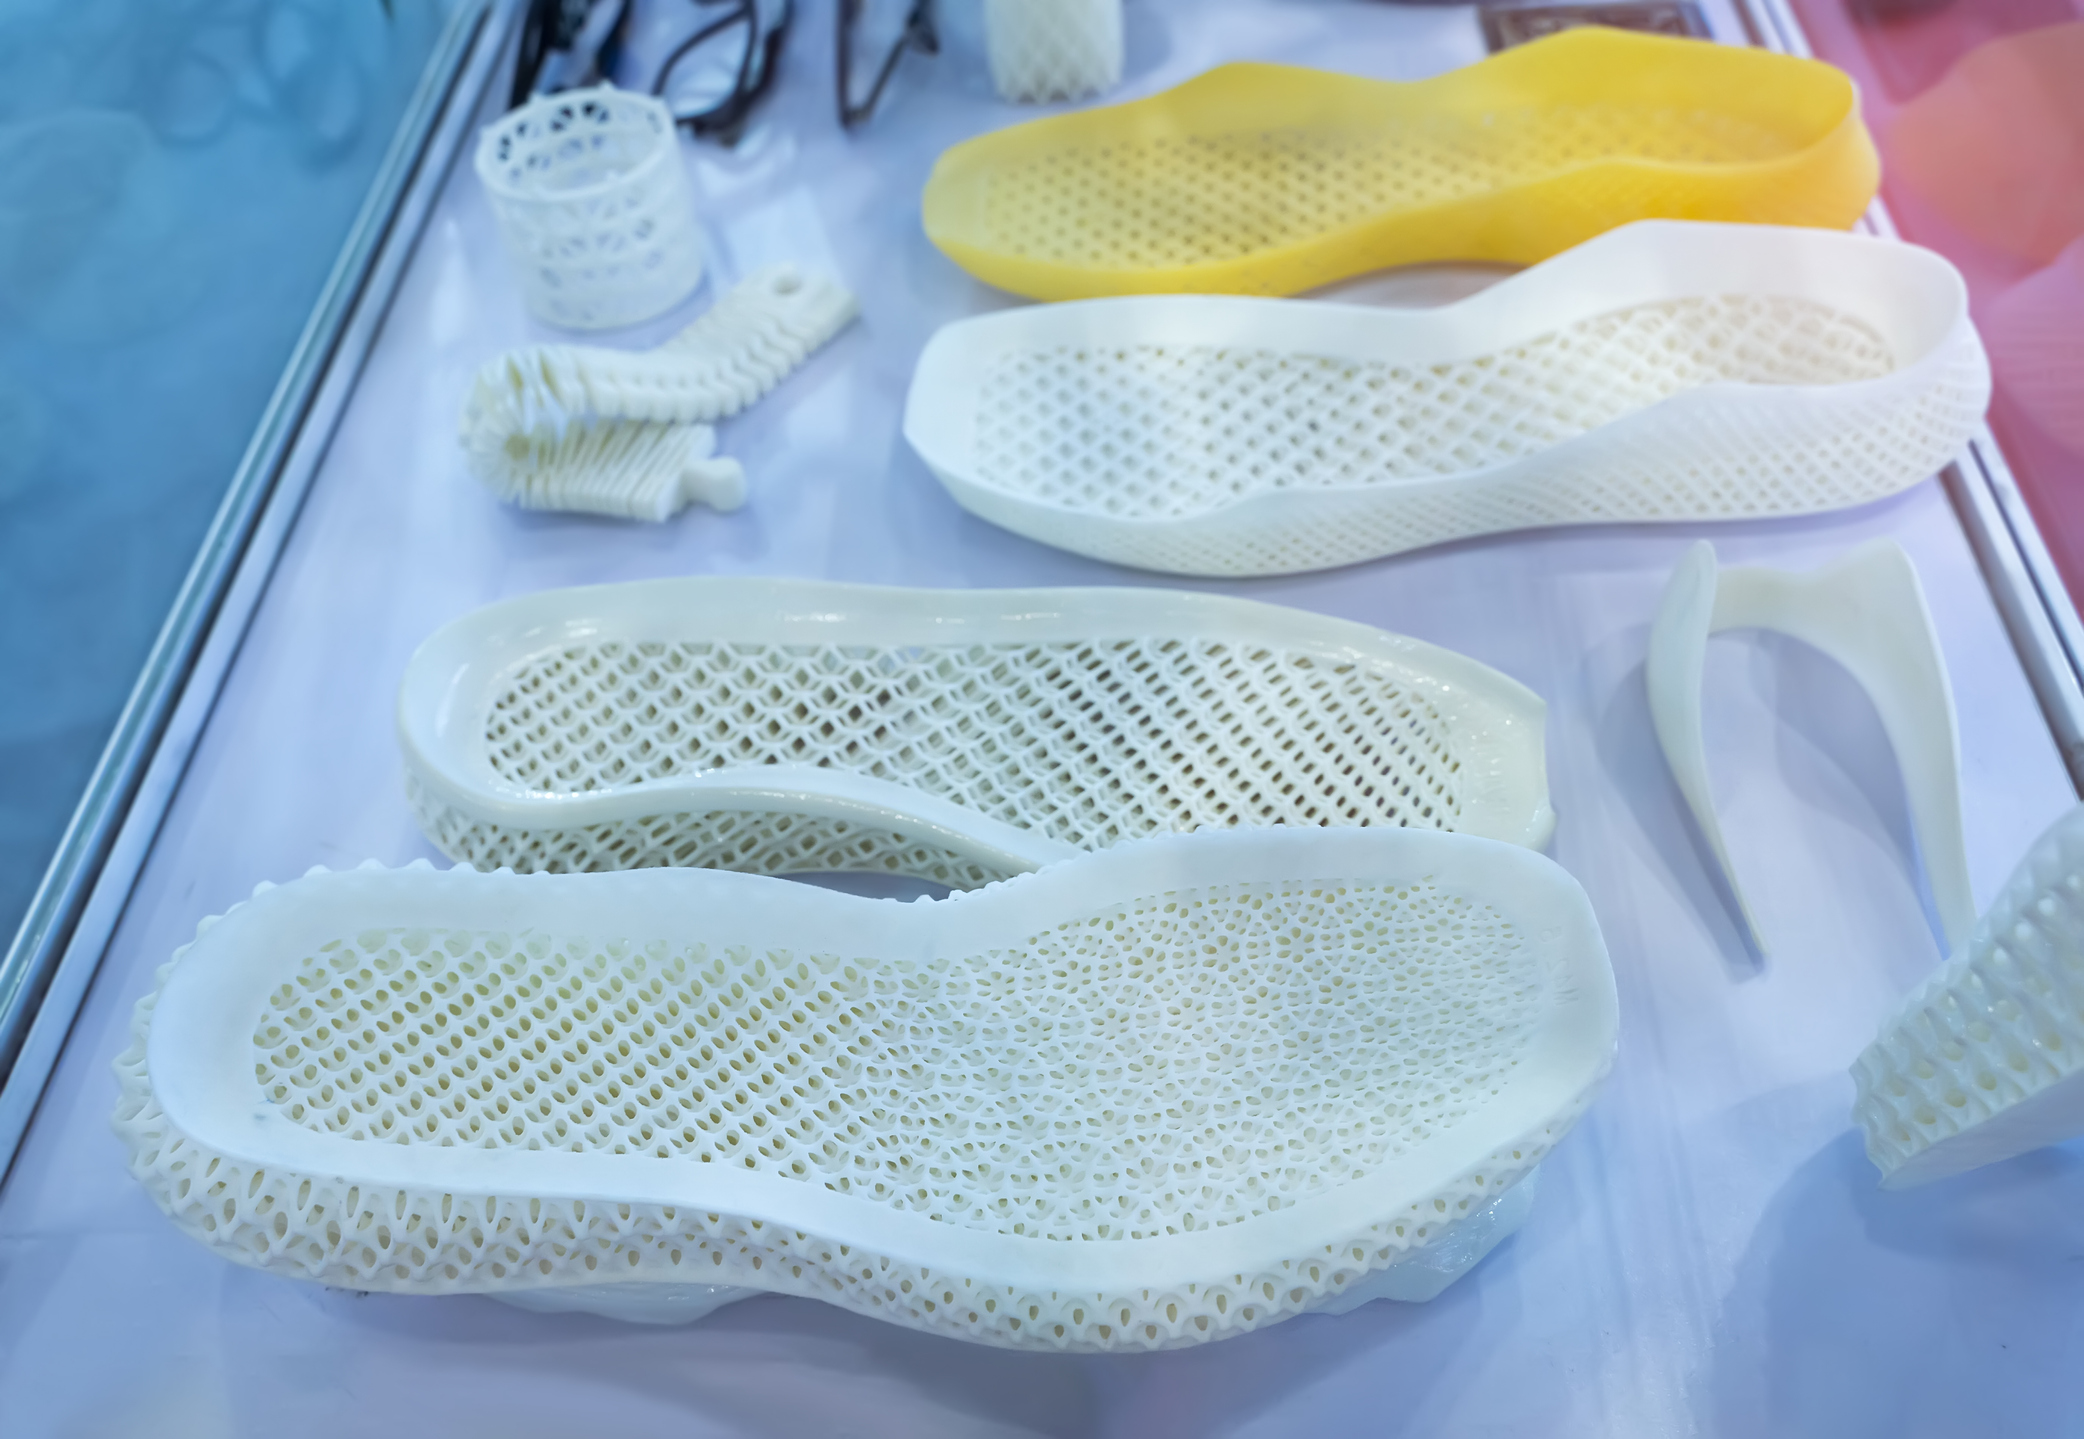 Prototypy obuwia powstaną w drukarce 3D